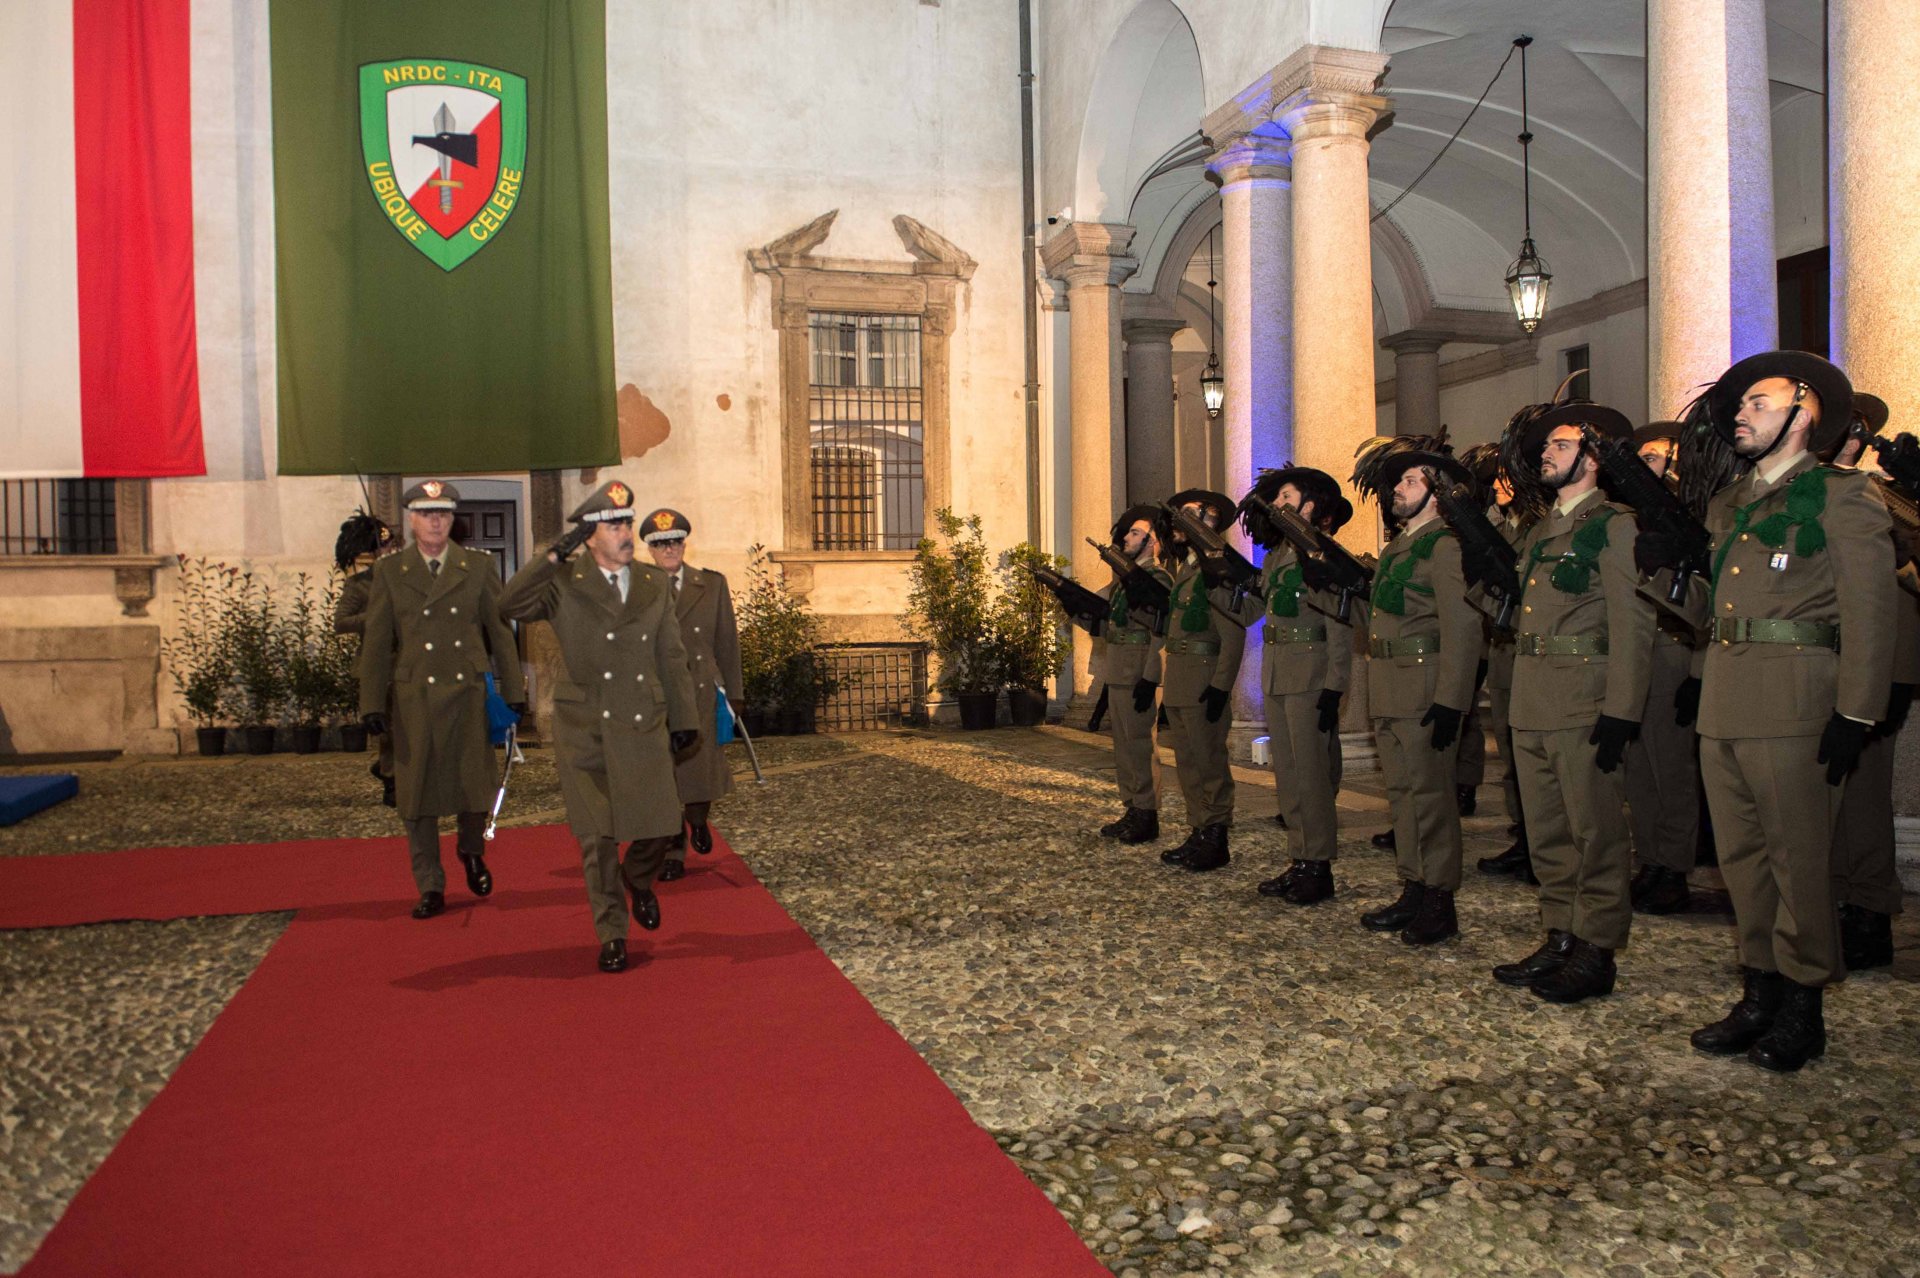 2019.12.09 - Cambio del Cte NRDC-ITA. Milano, Gen.C.A. Farina riceve gli onori (2)